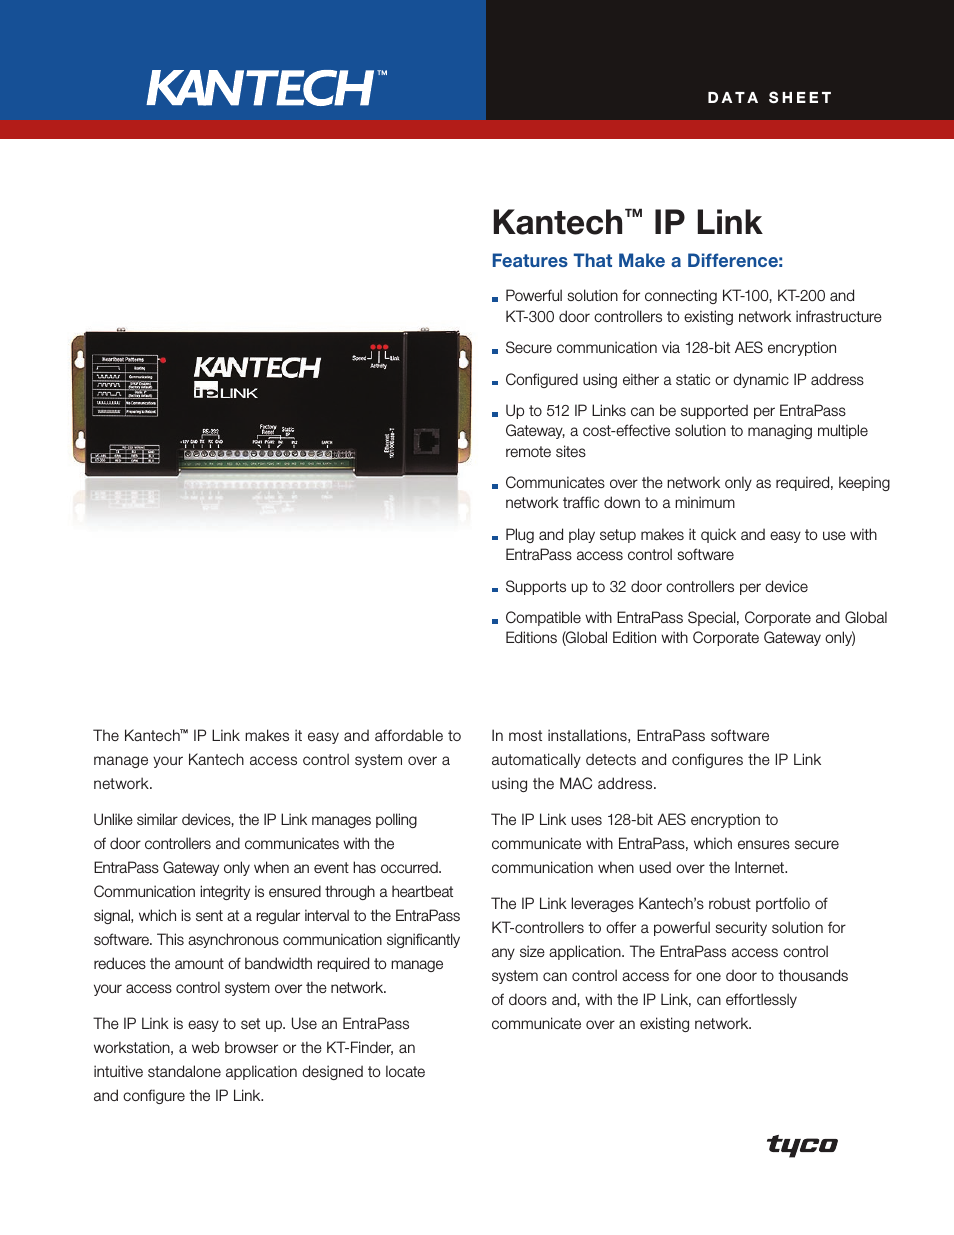 Kantech KT-100